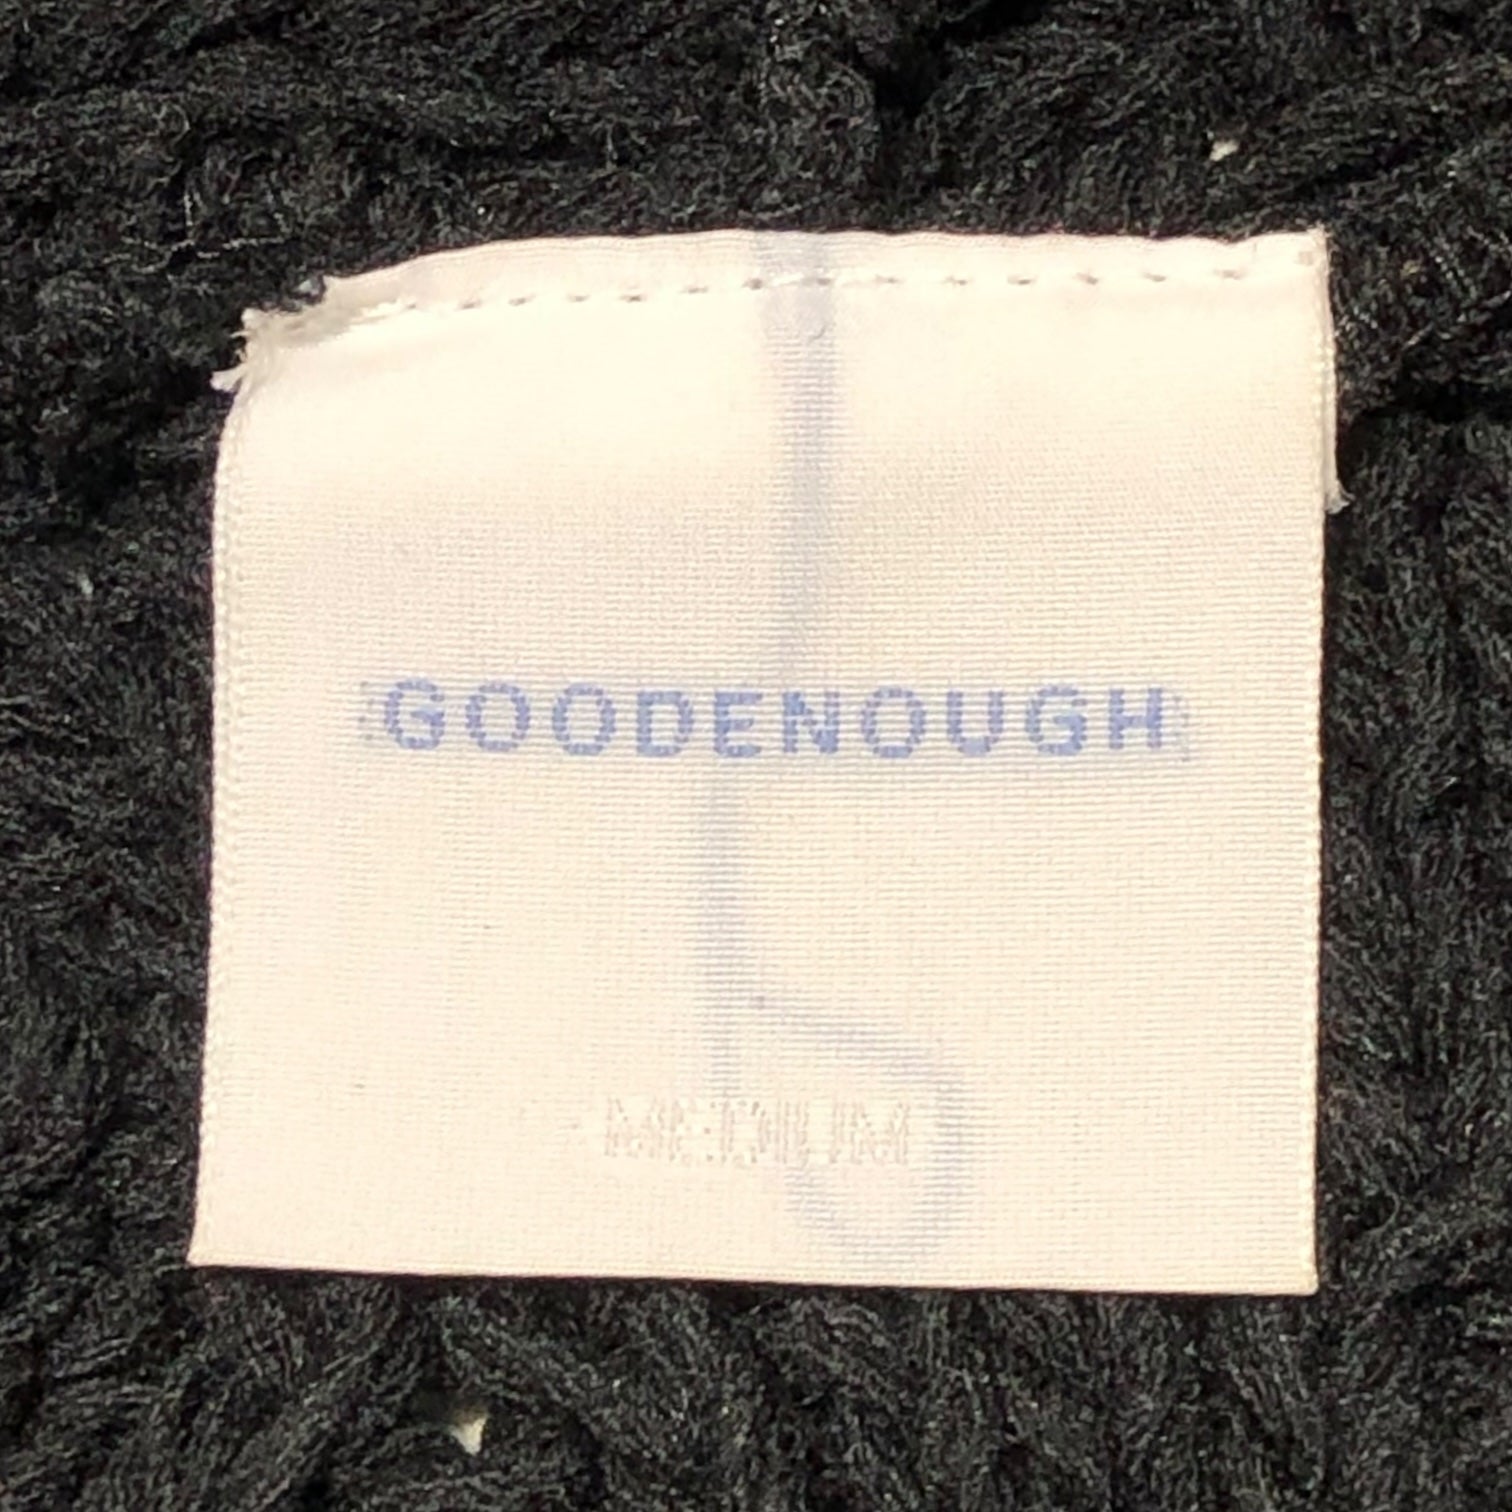 GOODENOUGH(グッドイナフ) 90~00'S cable knit zip hoodie ケーブルニット ジップパーカー 表記なし(FREE) ブラック 藤原ヒロシ